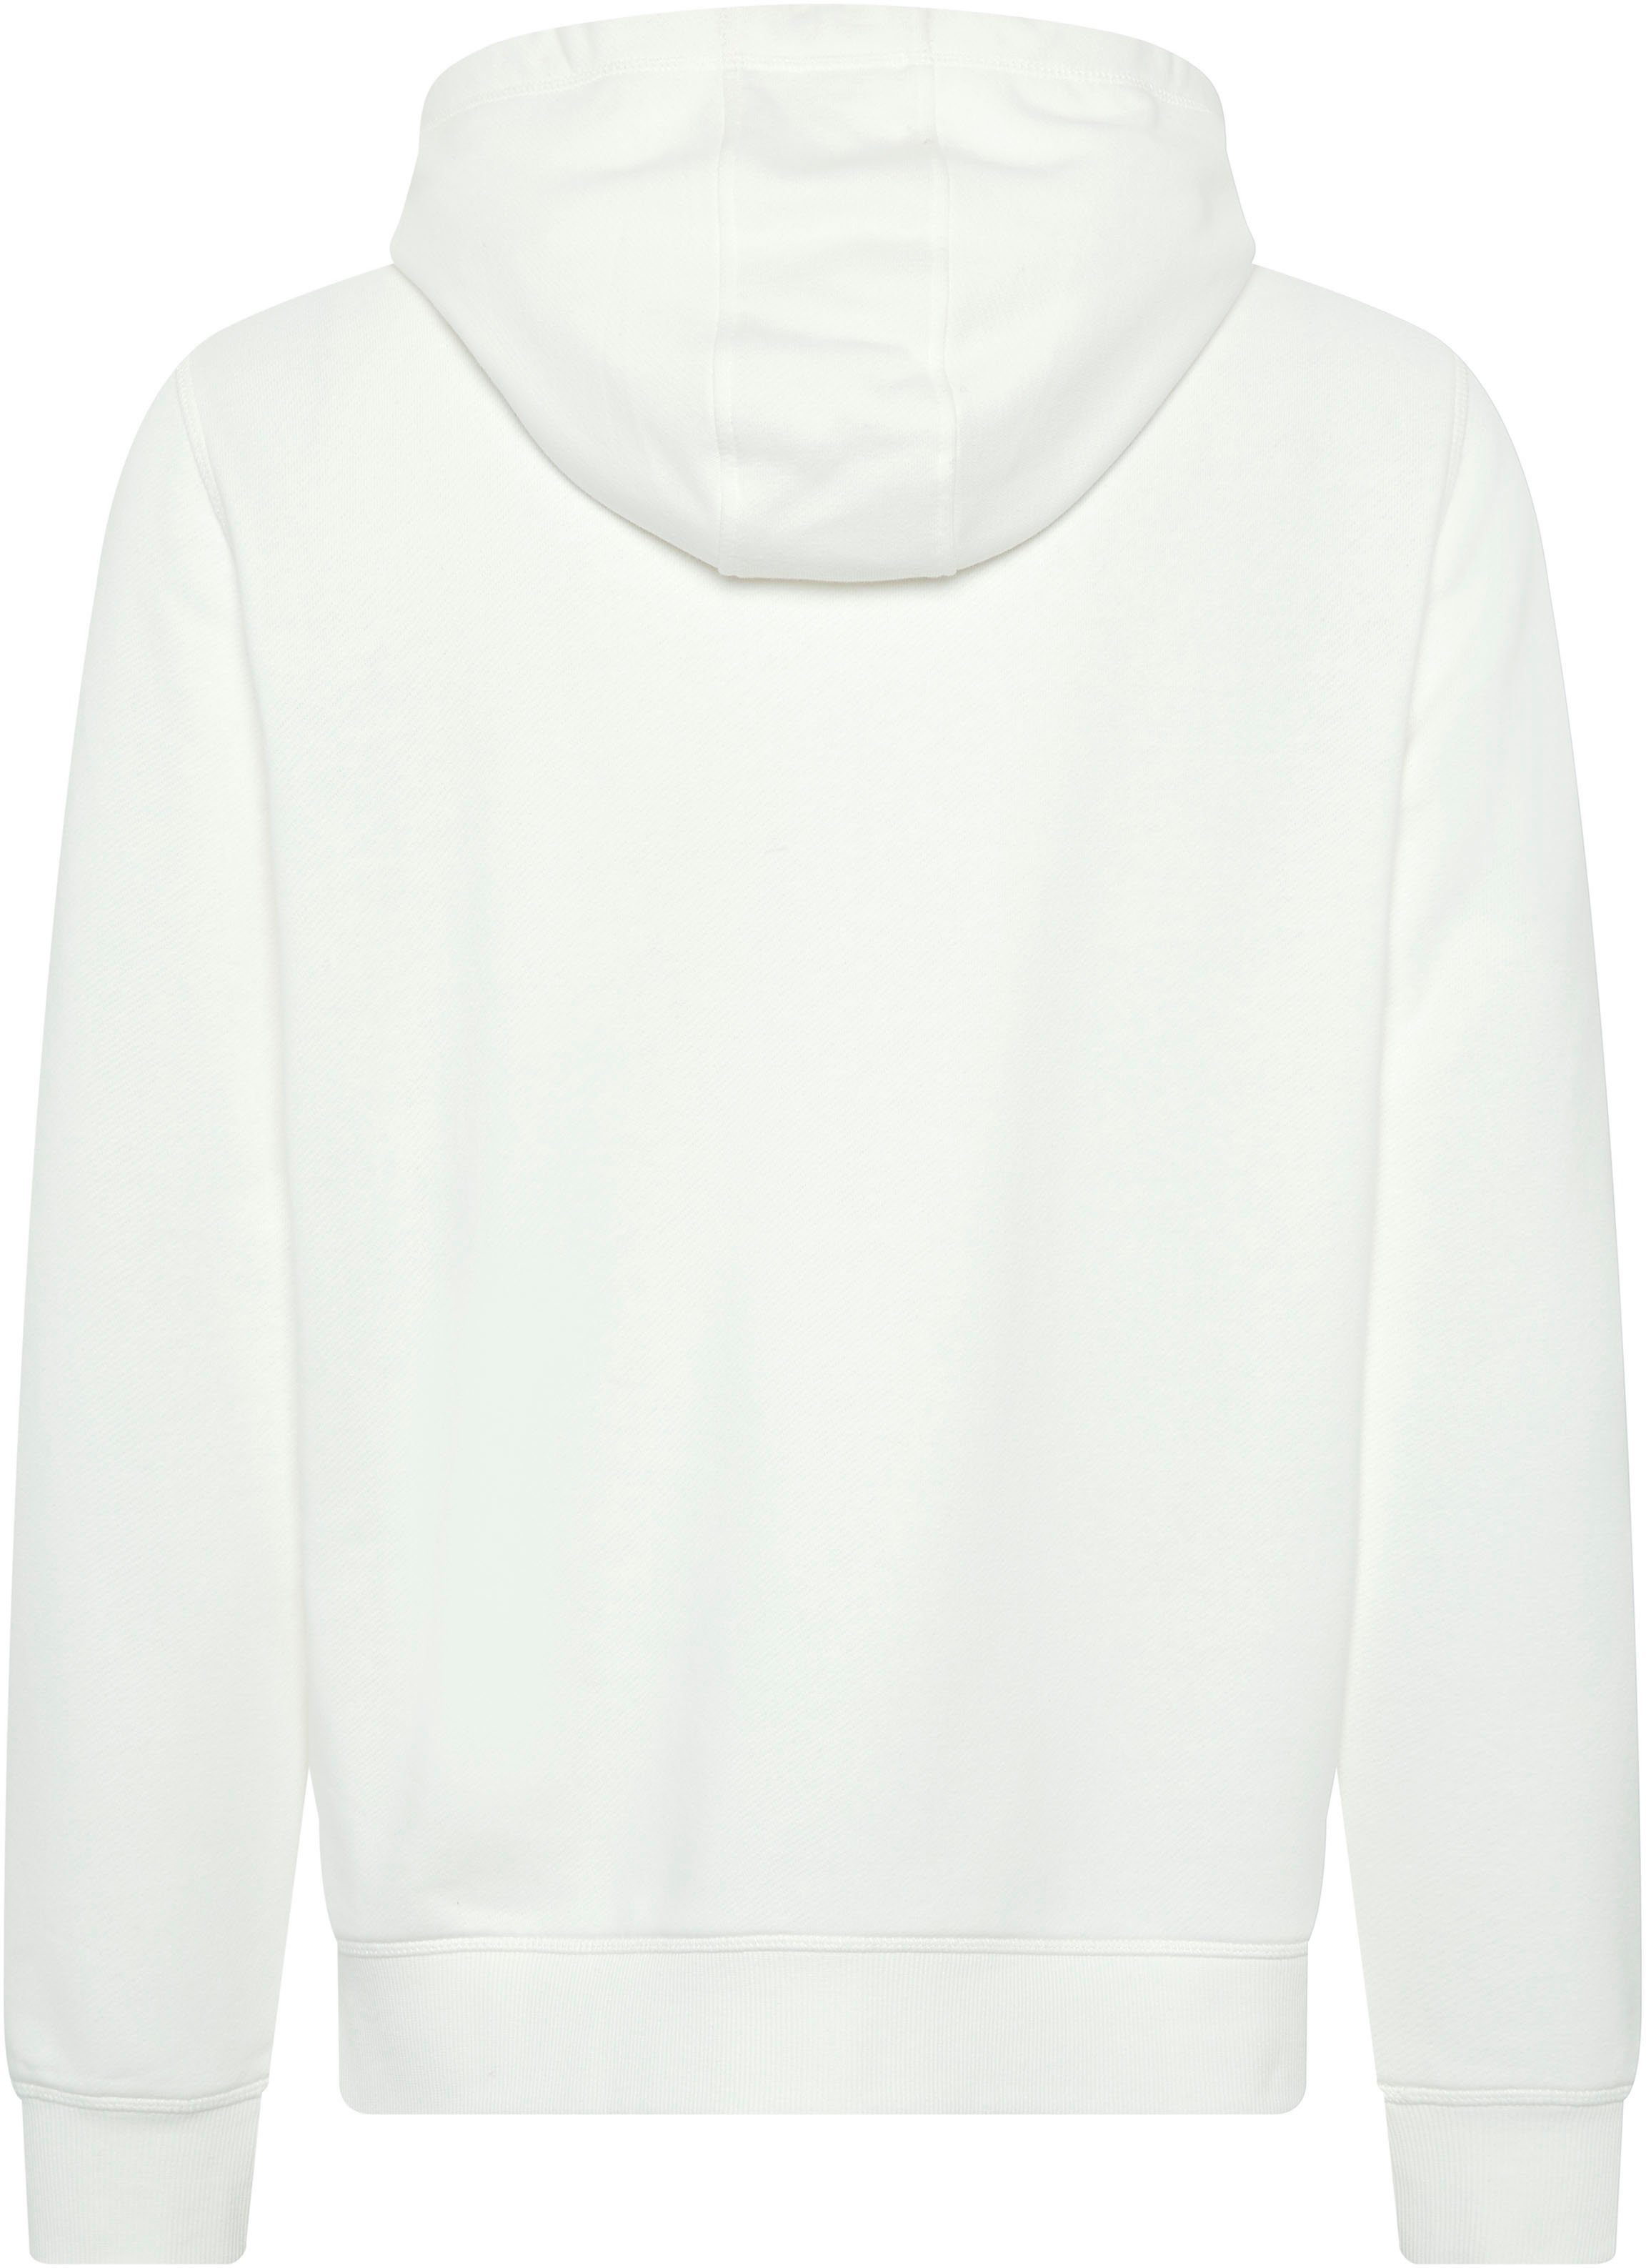 Chiemsee Sweatshirt Star White